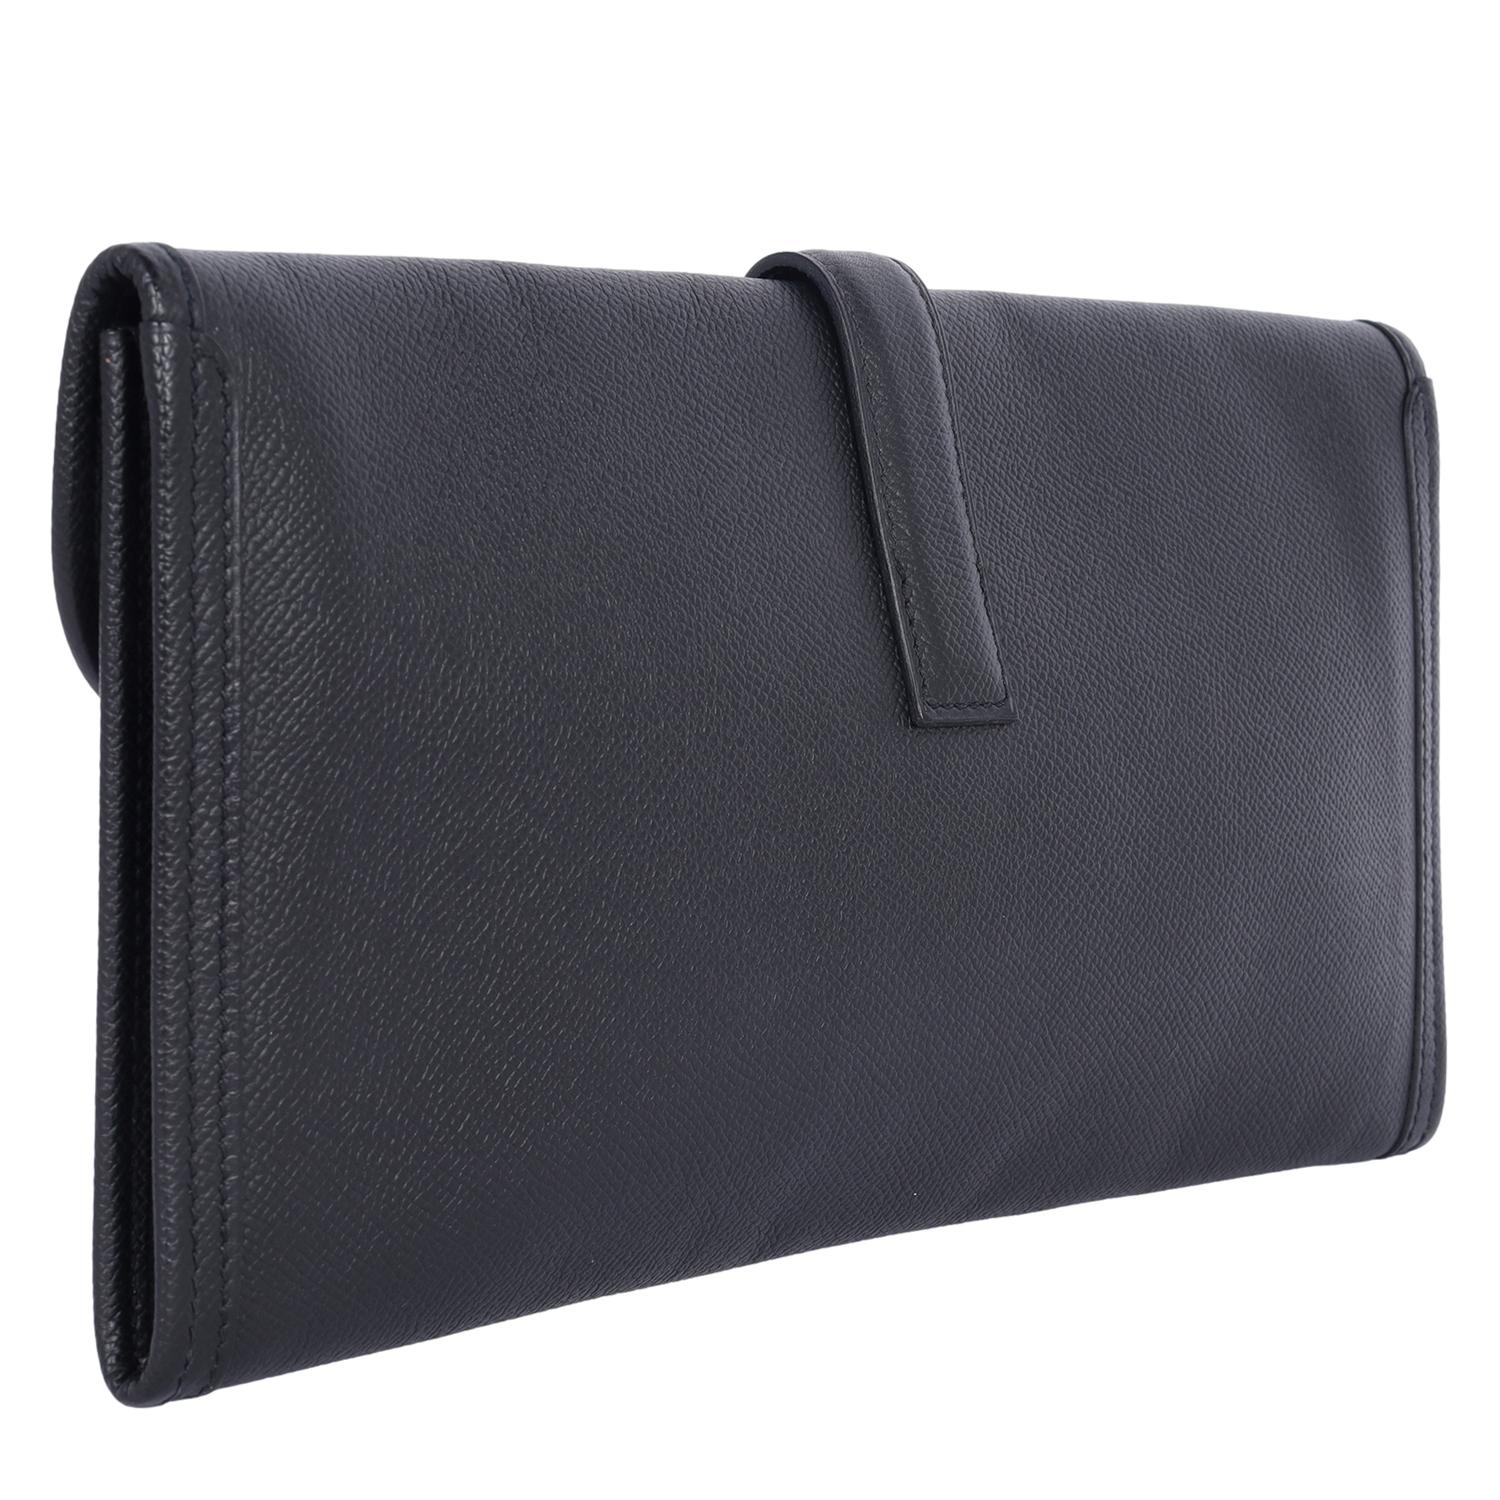 Hermes Black Leather Swift Jige Elan 29 Evening Bag Clutch For Sale 2